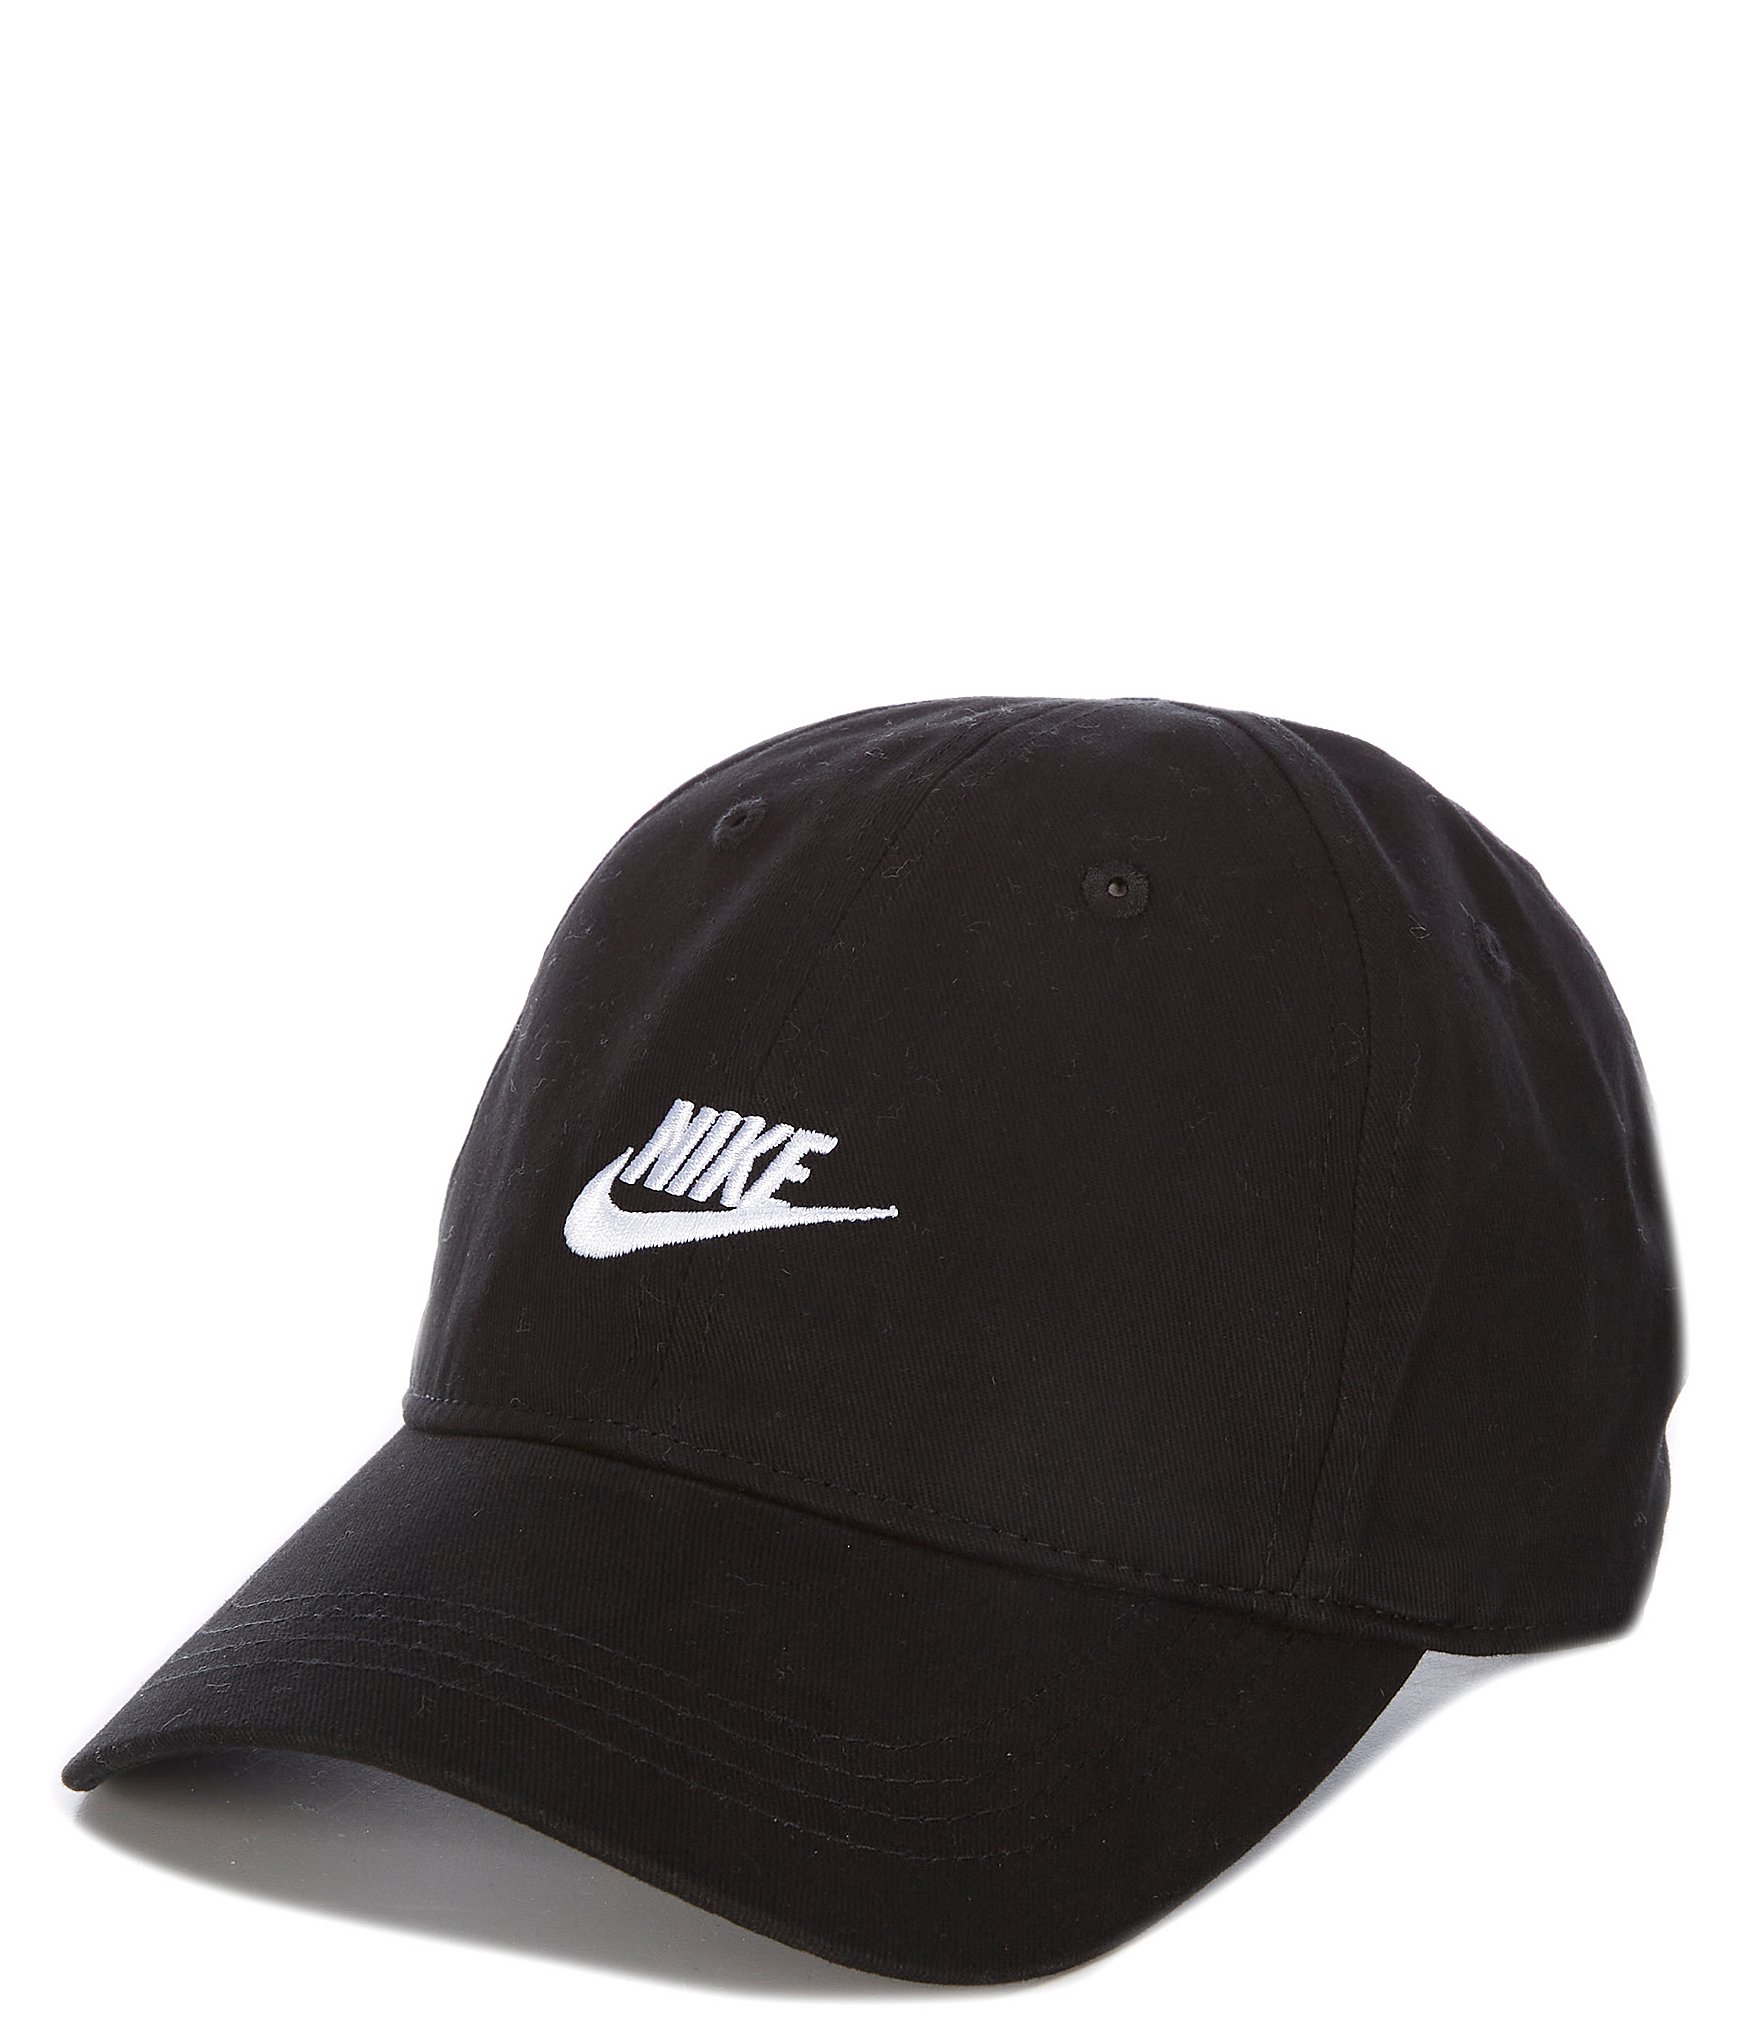 Kids' Nike Futura Curve Adjustable Hat Black